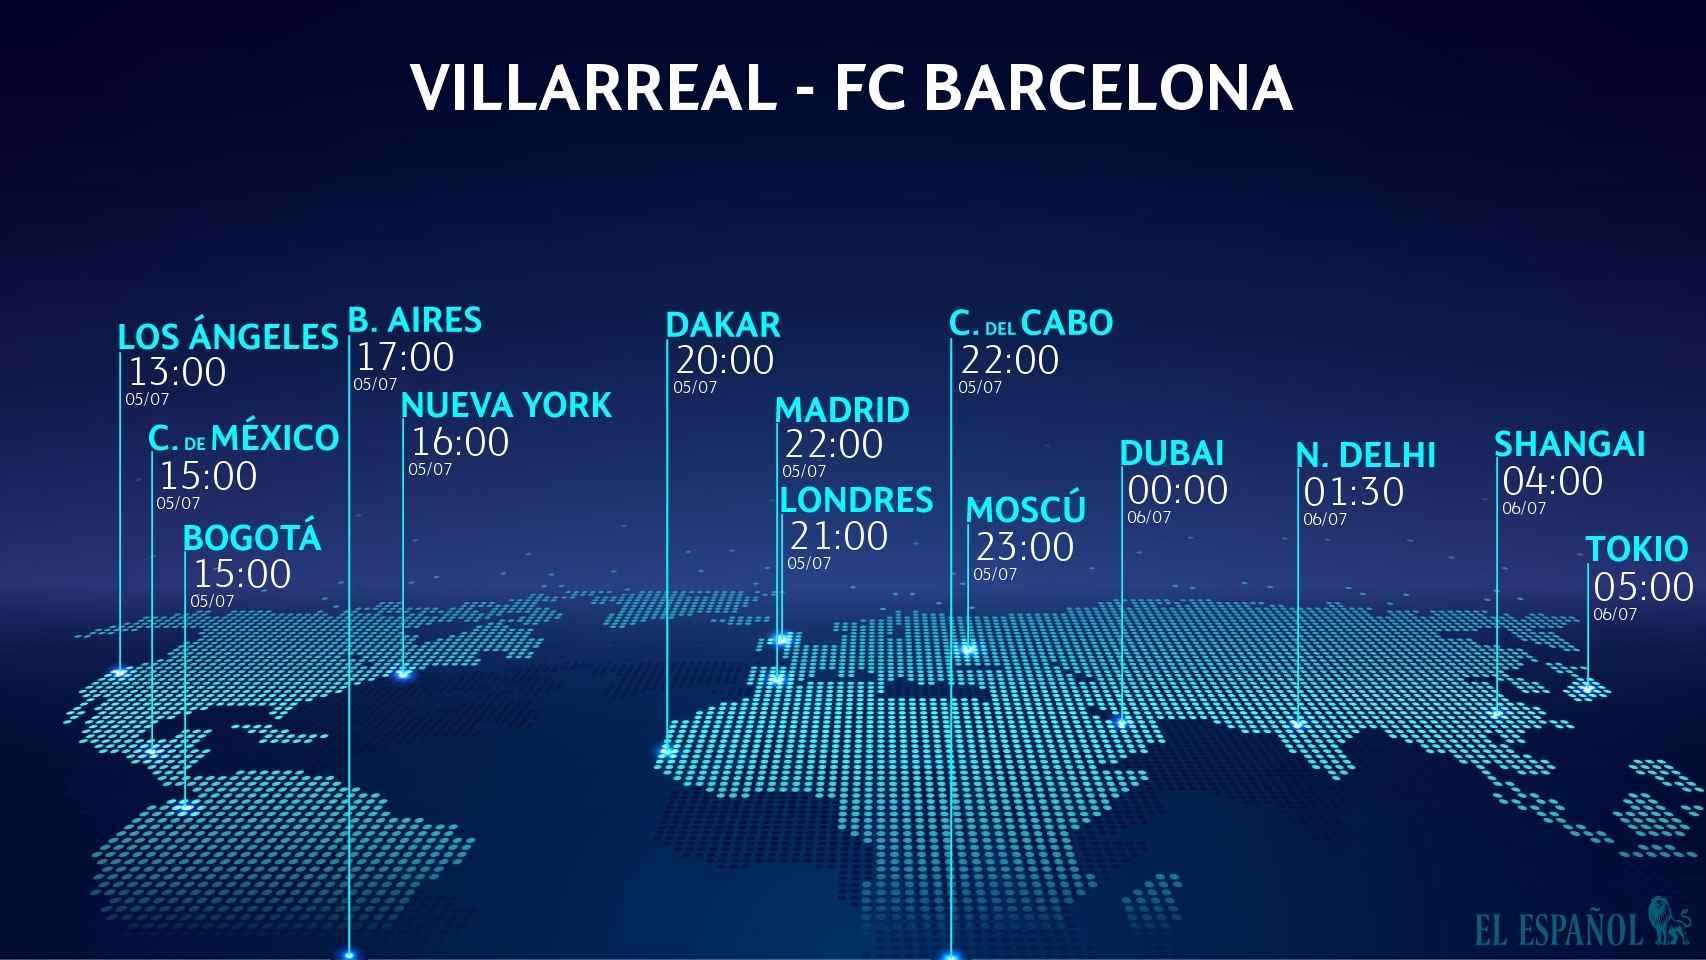 Villarreal - FC Barcelona, horario del partido